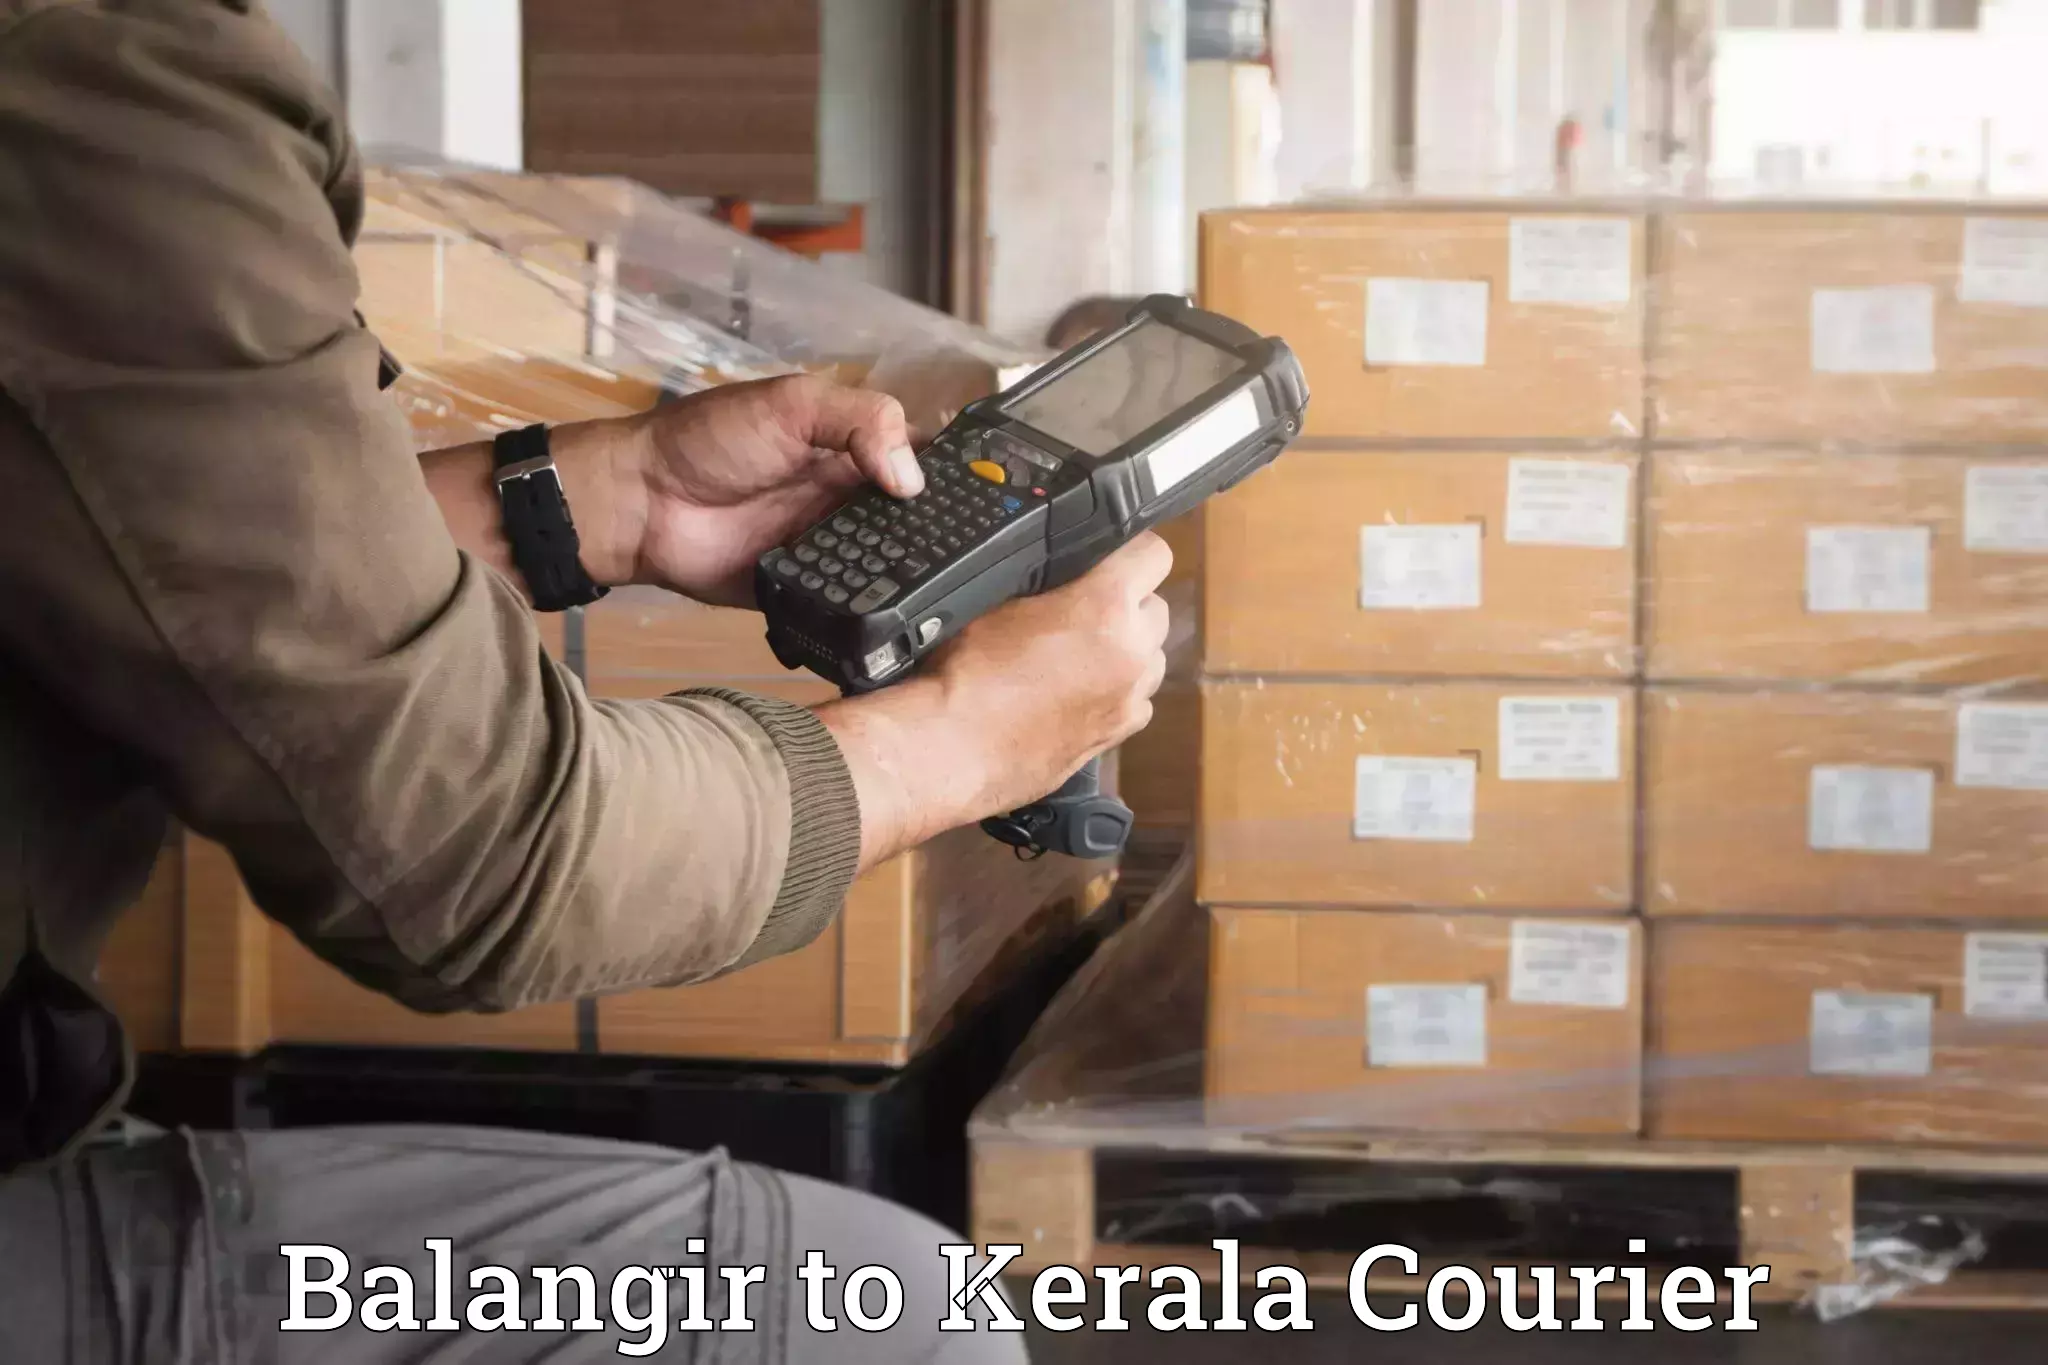 Furniture transport company Balangir to Kerala